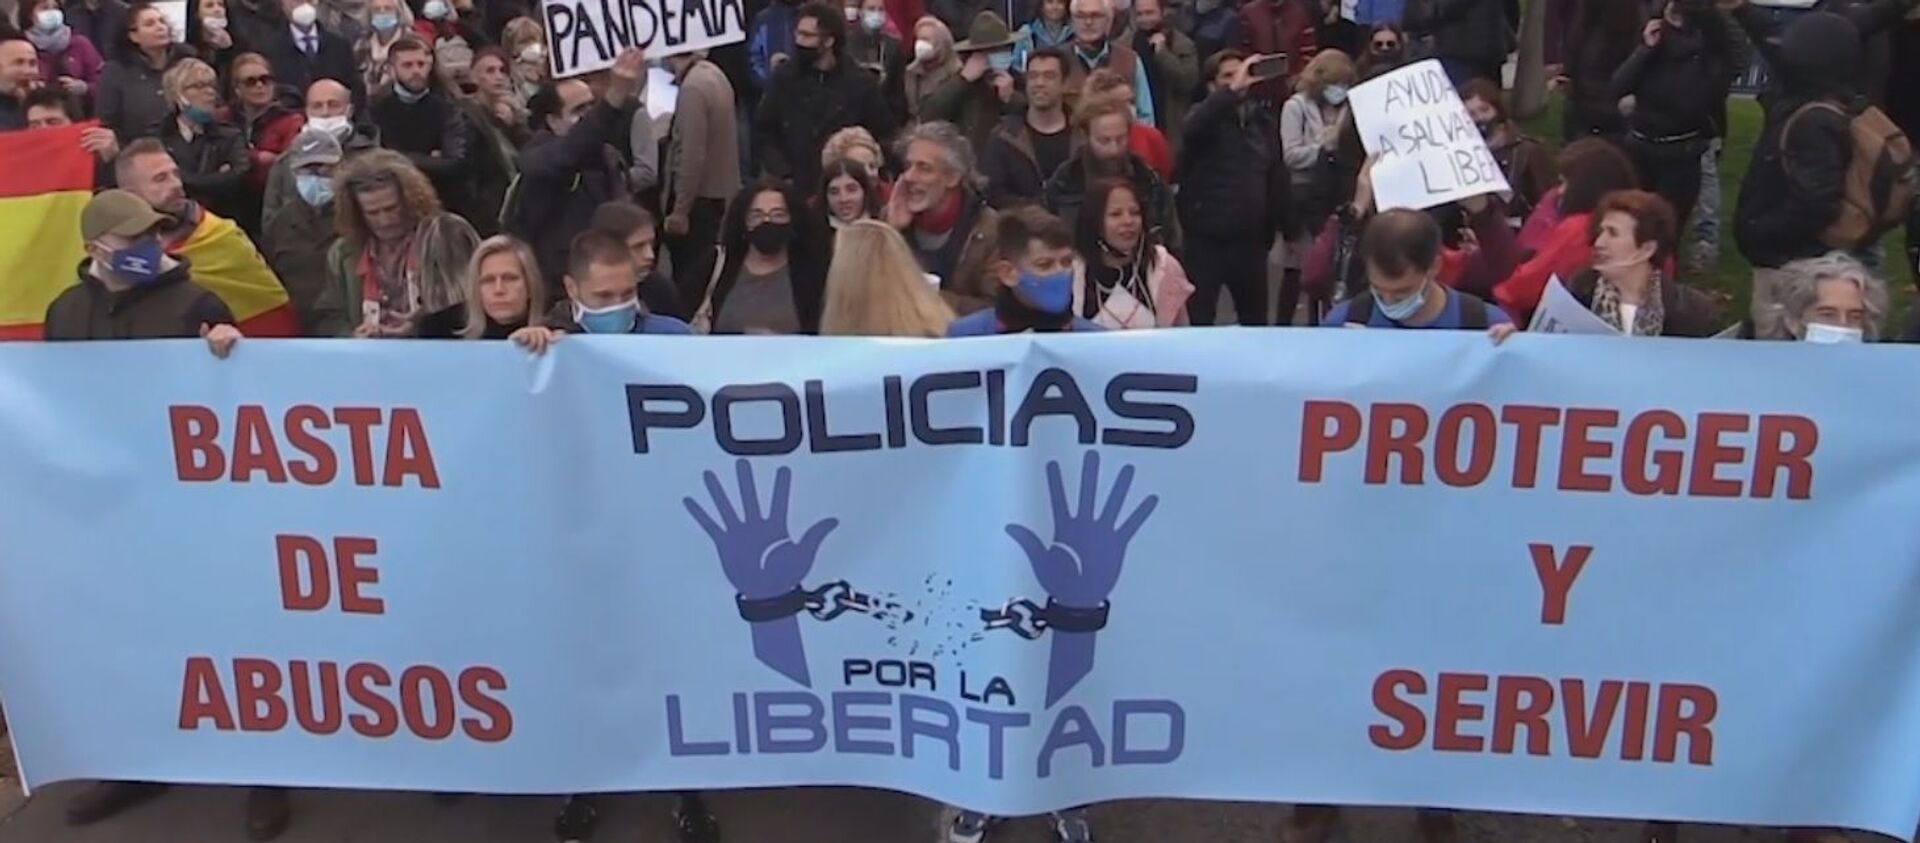 'Policías por la Libertad' convocan una marcha contra las medidas anti-COVID en Madrid - Sputnik Mundo, 1920, 08.11.2020